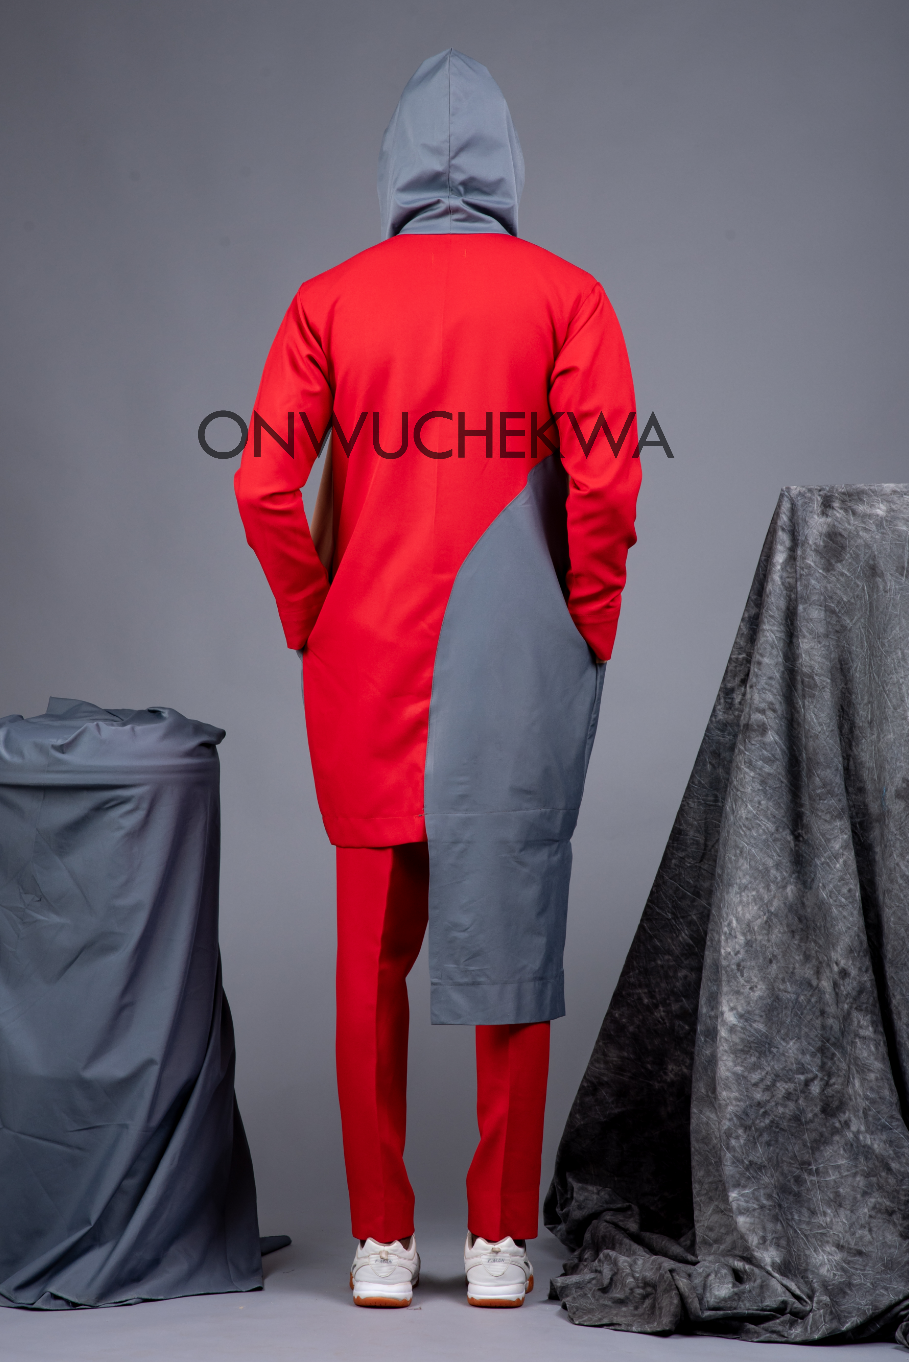 Onwuchekwa by Chikezie Daniel